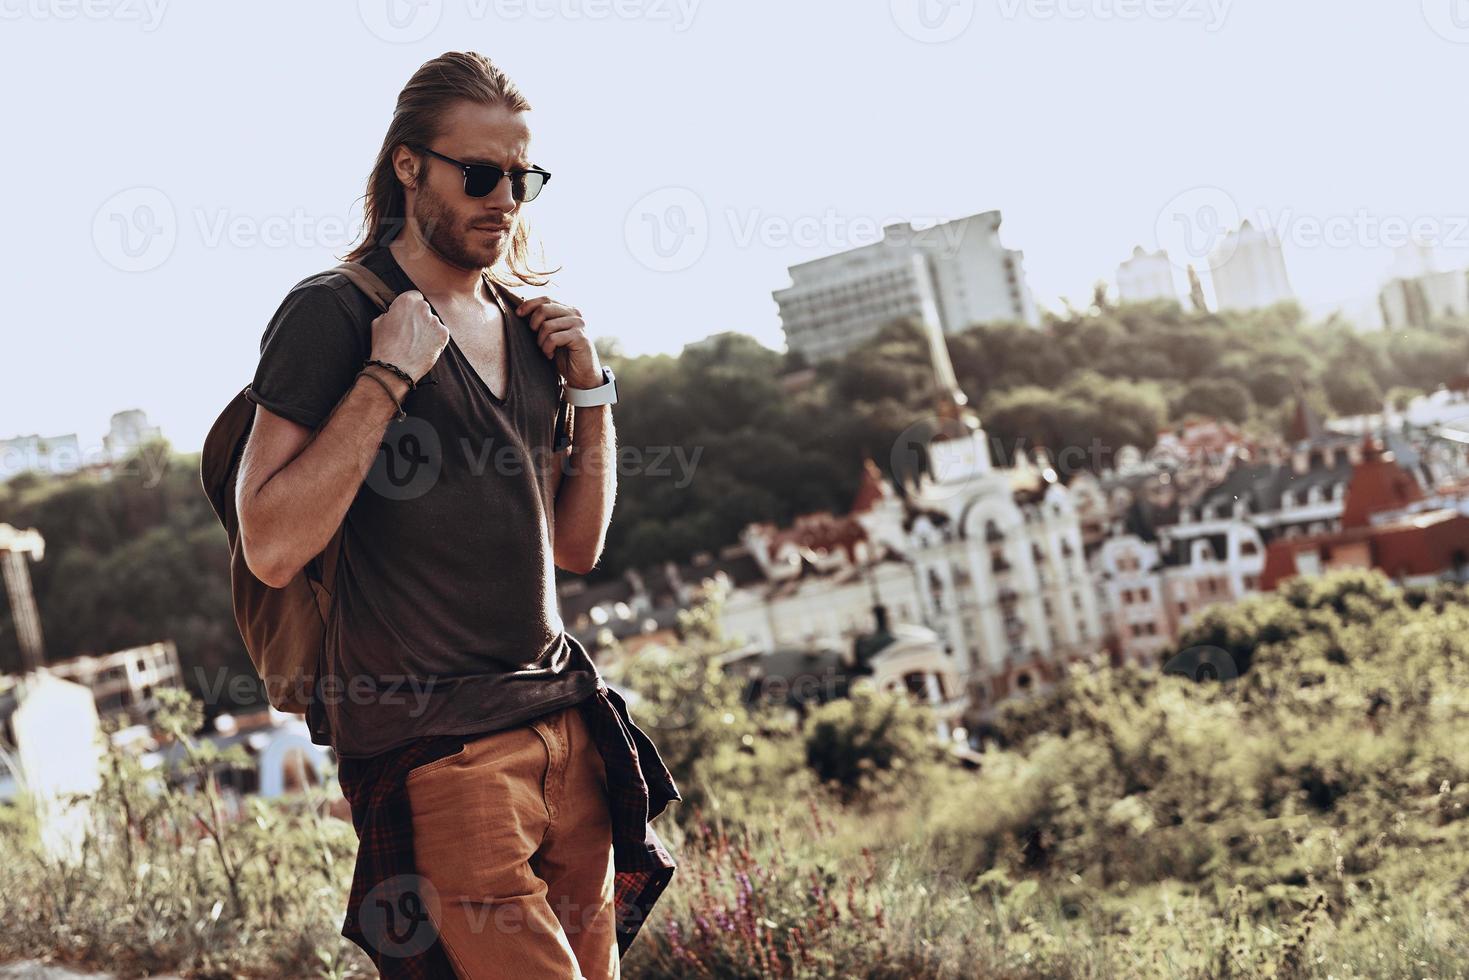 lugar adecuado para pensar. un joven apuesto con ropa informal caminando por la colina al aire libre mientras disfruta de su viaje foto